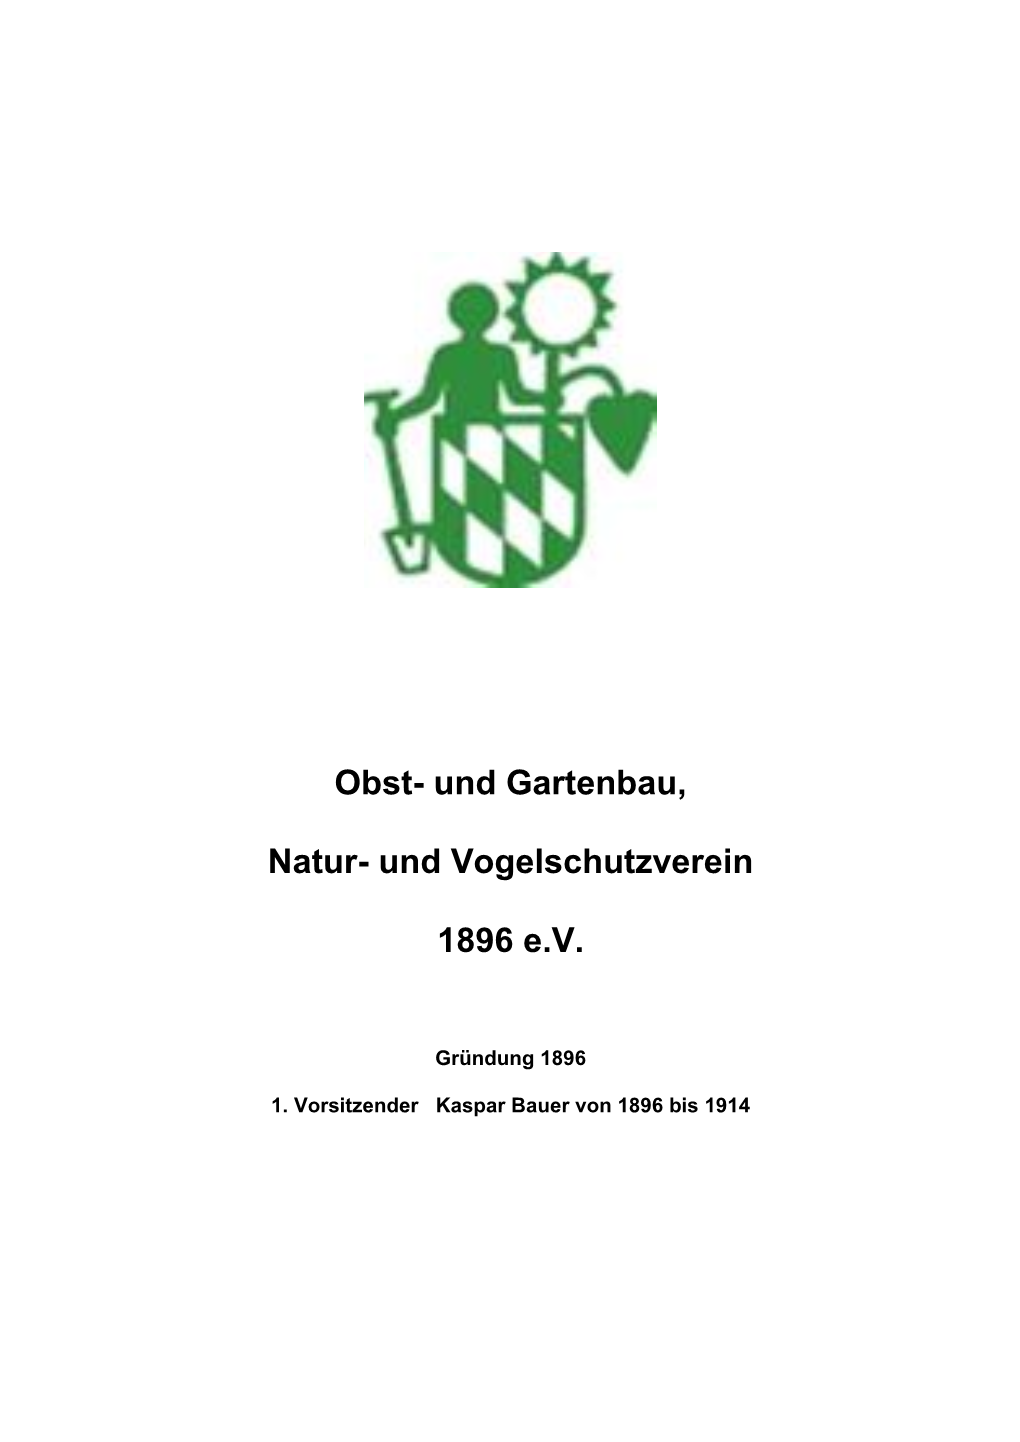 Chronik OGV Geiselbach, Stand 27.07.2020[...]